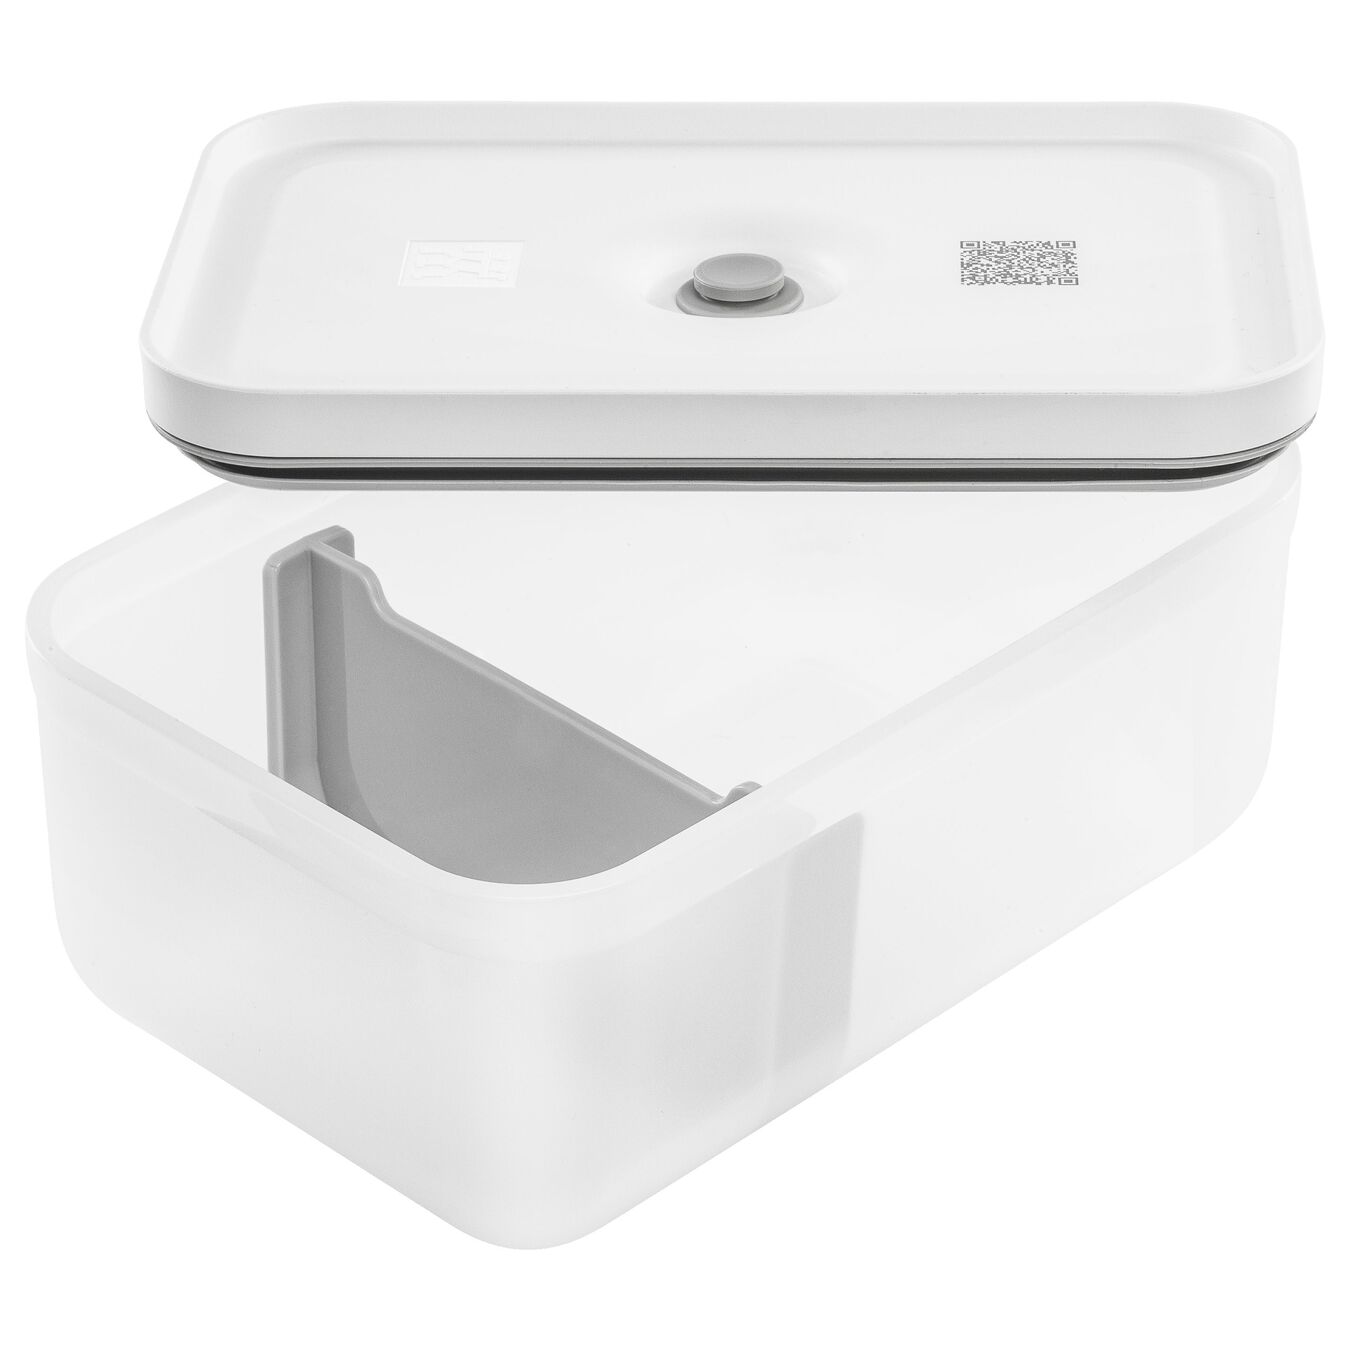 Lunch box L, Plastique, semi transparent-Gris,,large 5